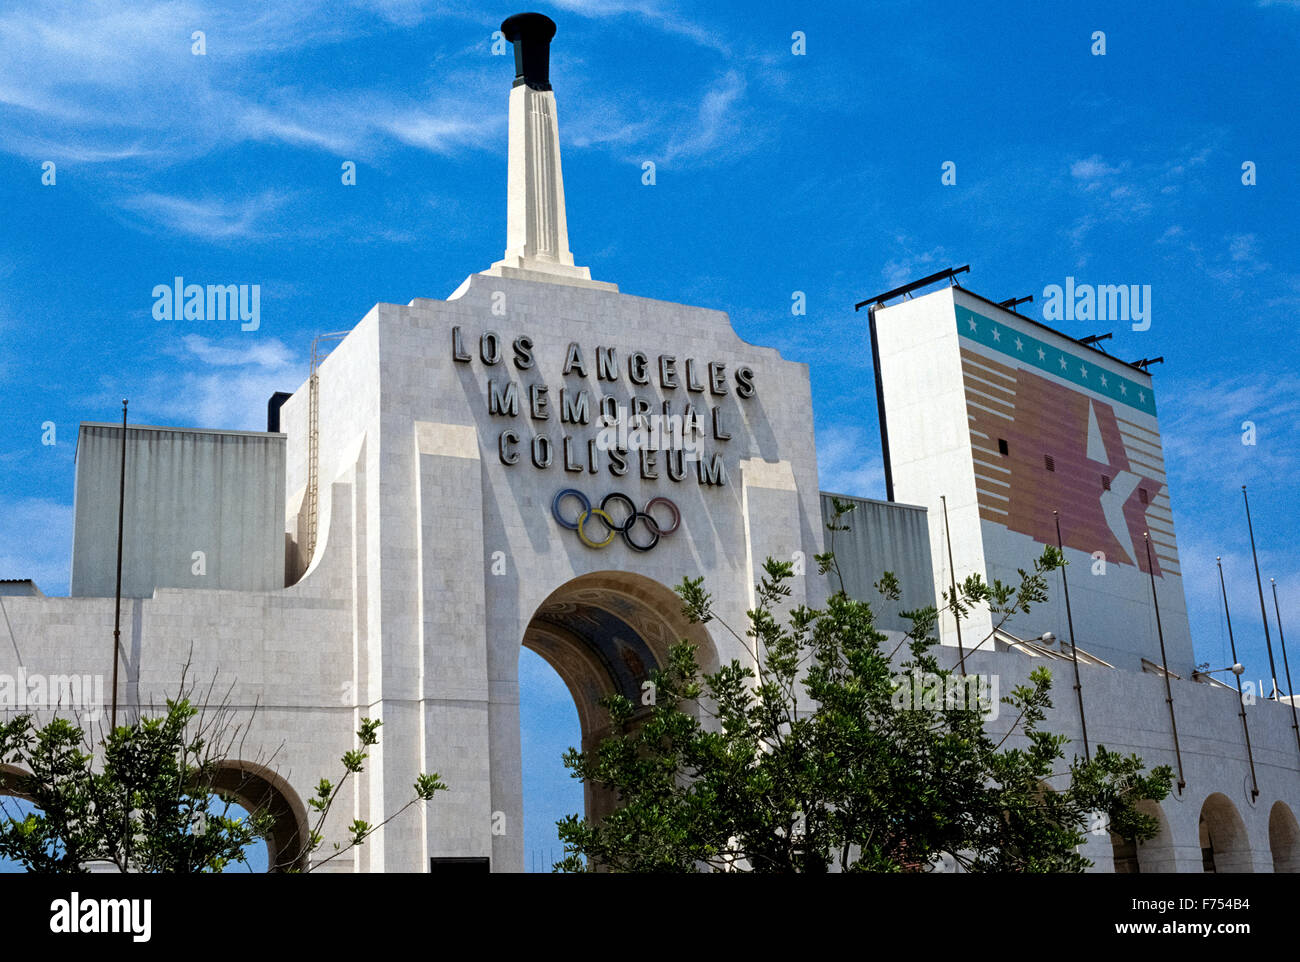 Das Los Angeles Memorial Coliseum ist eine ehrwürdige outdoor-Sport-Stadion in Süd-Kalifornien, USA, die Gastgeber für die Olympischen Sommerspiele 1932 und 1984 war. Seit der Eröffnung im Jahr 1923 wurde es das Heimstadion des USC Trojans, die Fußball-Nationalmannschaft von der University of Southern California. Die beeindruckende Haupteingang in das LA Kolosseum ist ein Torbogen anzeigen das Olympische Symbol der fünf miteinander verbundene Ringe und die Olympische Fackel, die für besondere Anlässe gezündet wird. Das Stadion fasst mehr als 93.000 Zuschauer und wurde vorgeschlagen, wieder Gastgeber für die Olympischen Sommerspiele im Jahr 2024. Stockfoto